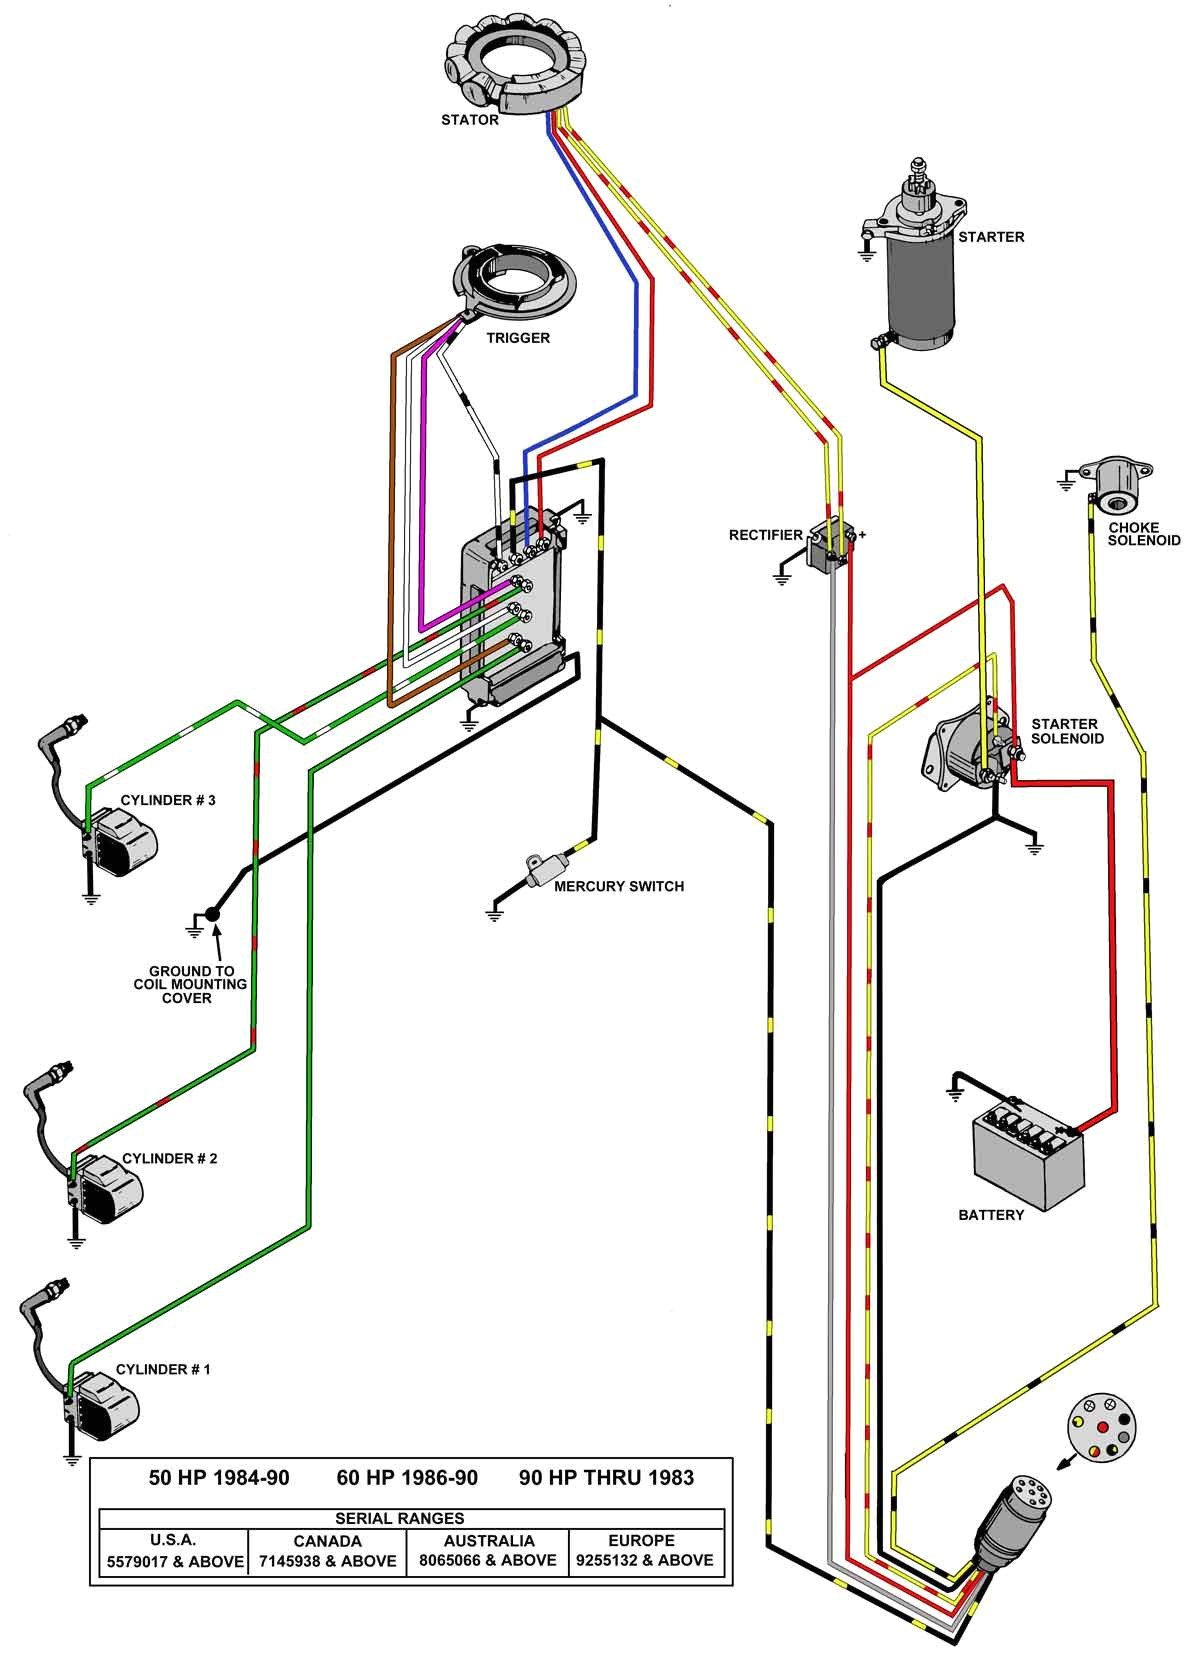 1985 40 hp wiring diagram blog wiring diagram davidson wiring harness diagram on yamaha 115 hp lower unit diagram